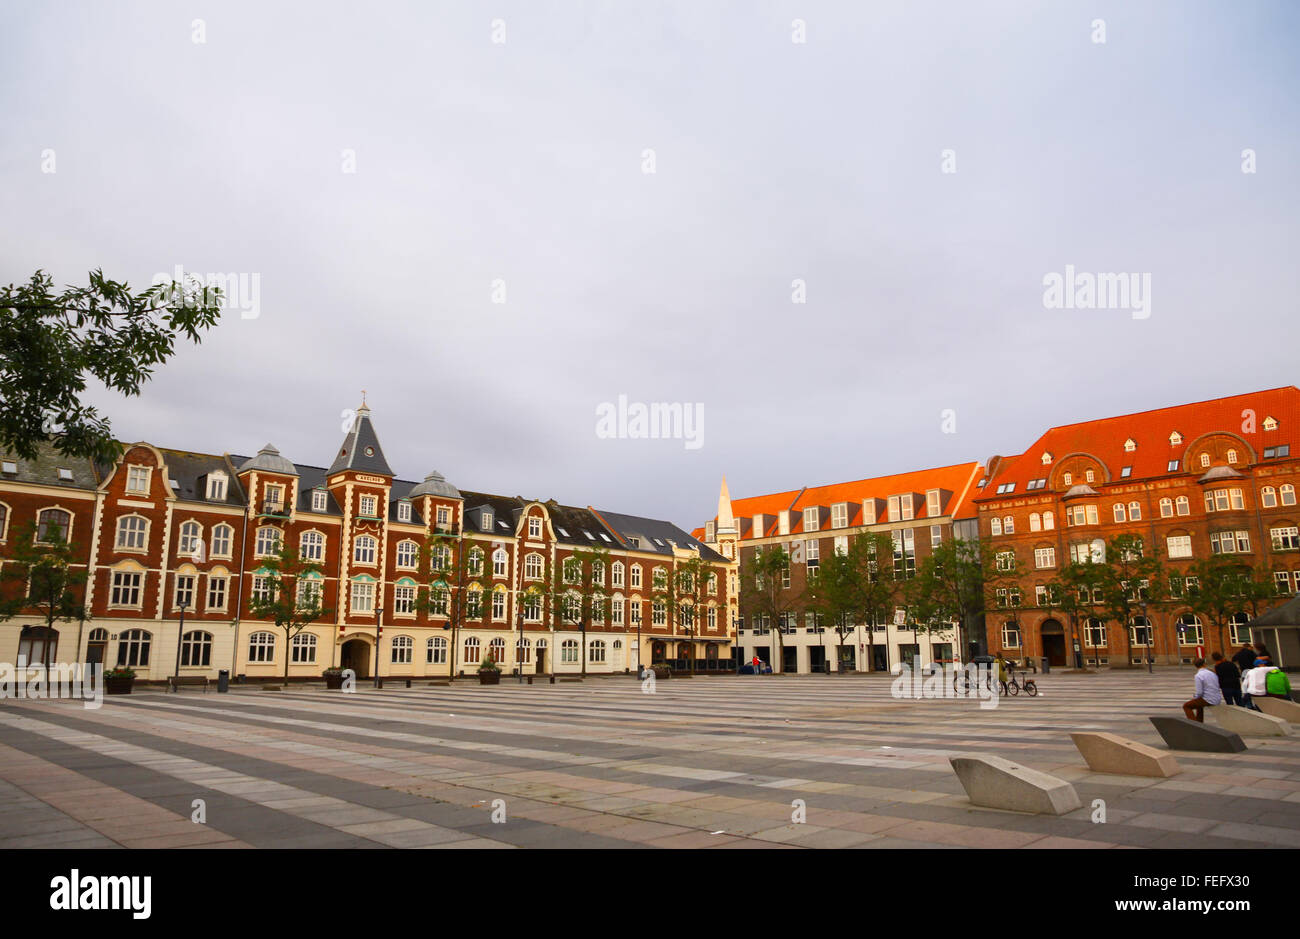 Market Square (Axeltorv) in Fredericia city, Denmark Stock Photo